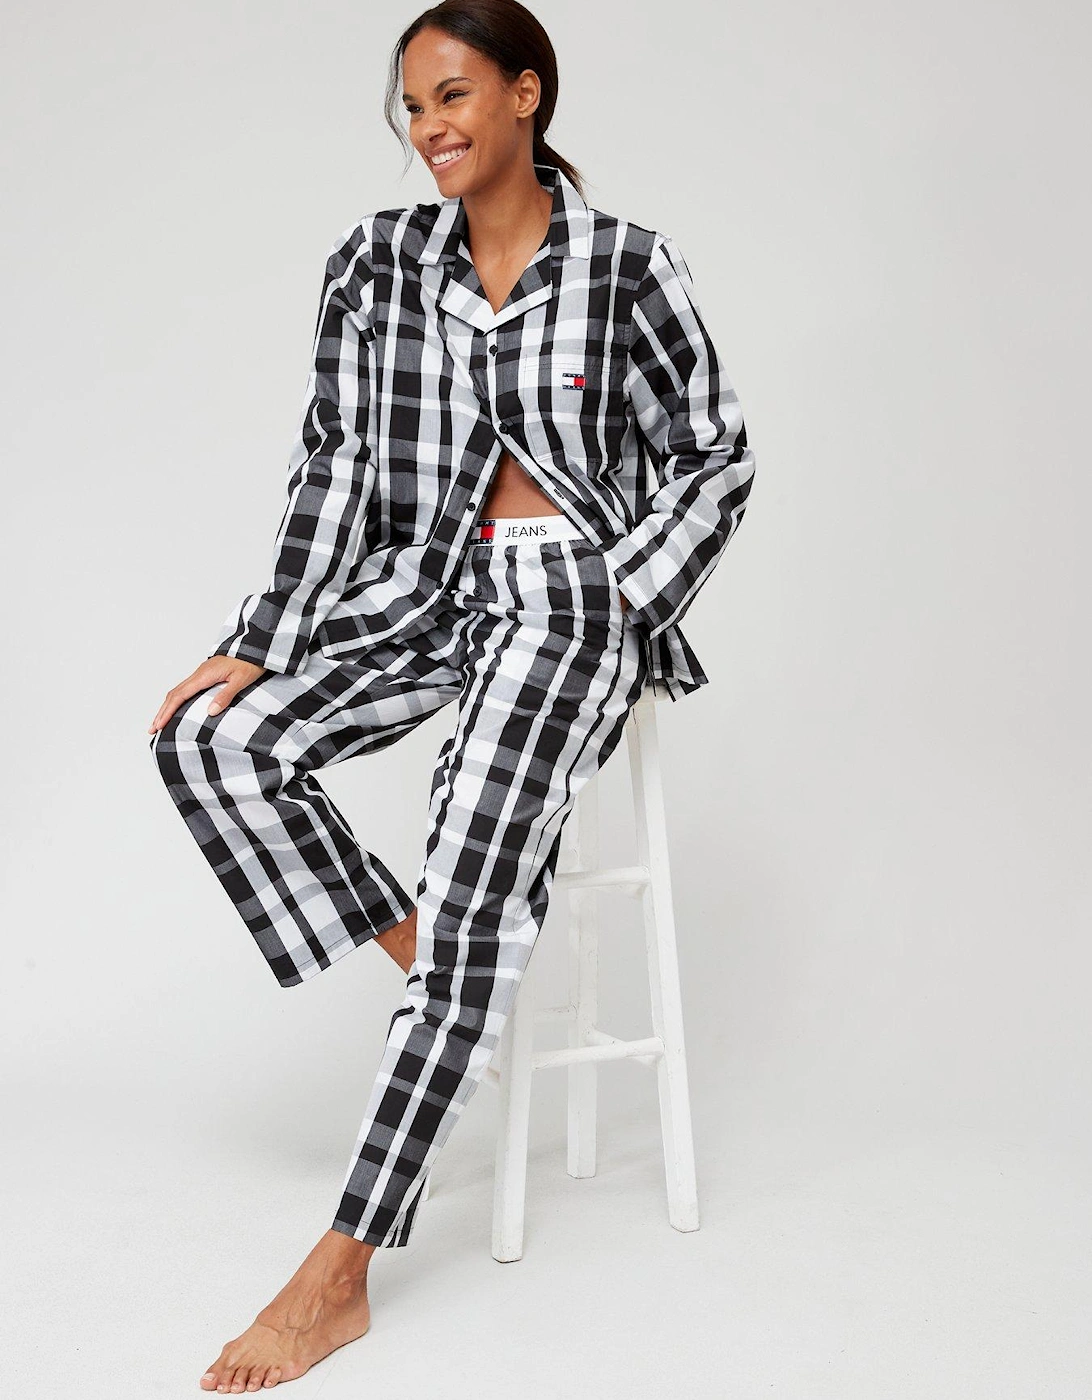 Long Sleeve Long Pants Pyjama Set - Multi